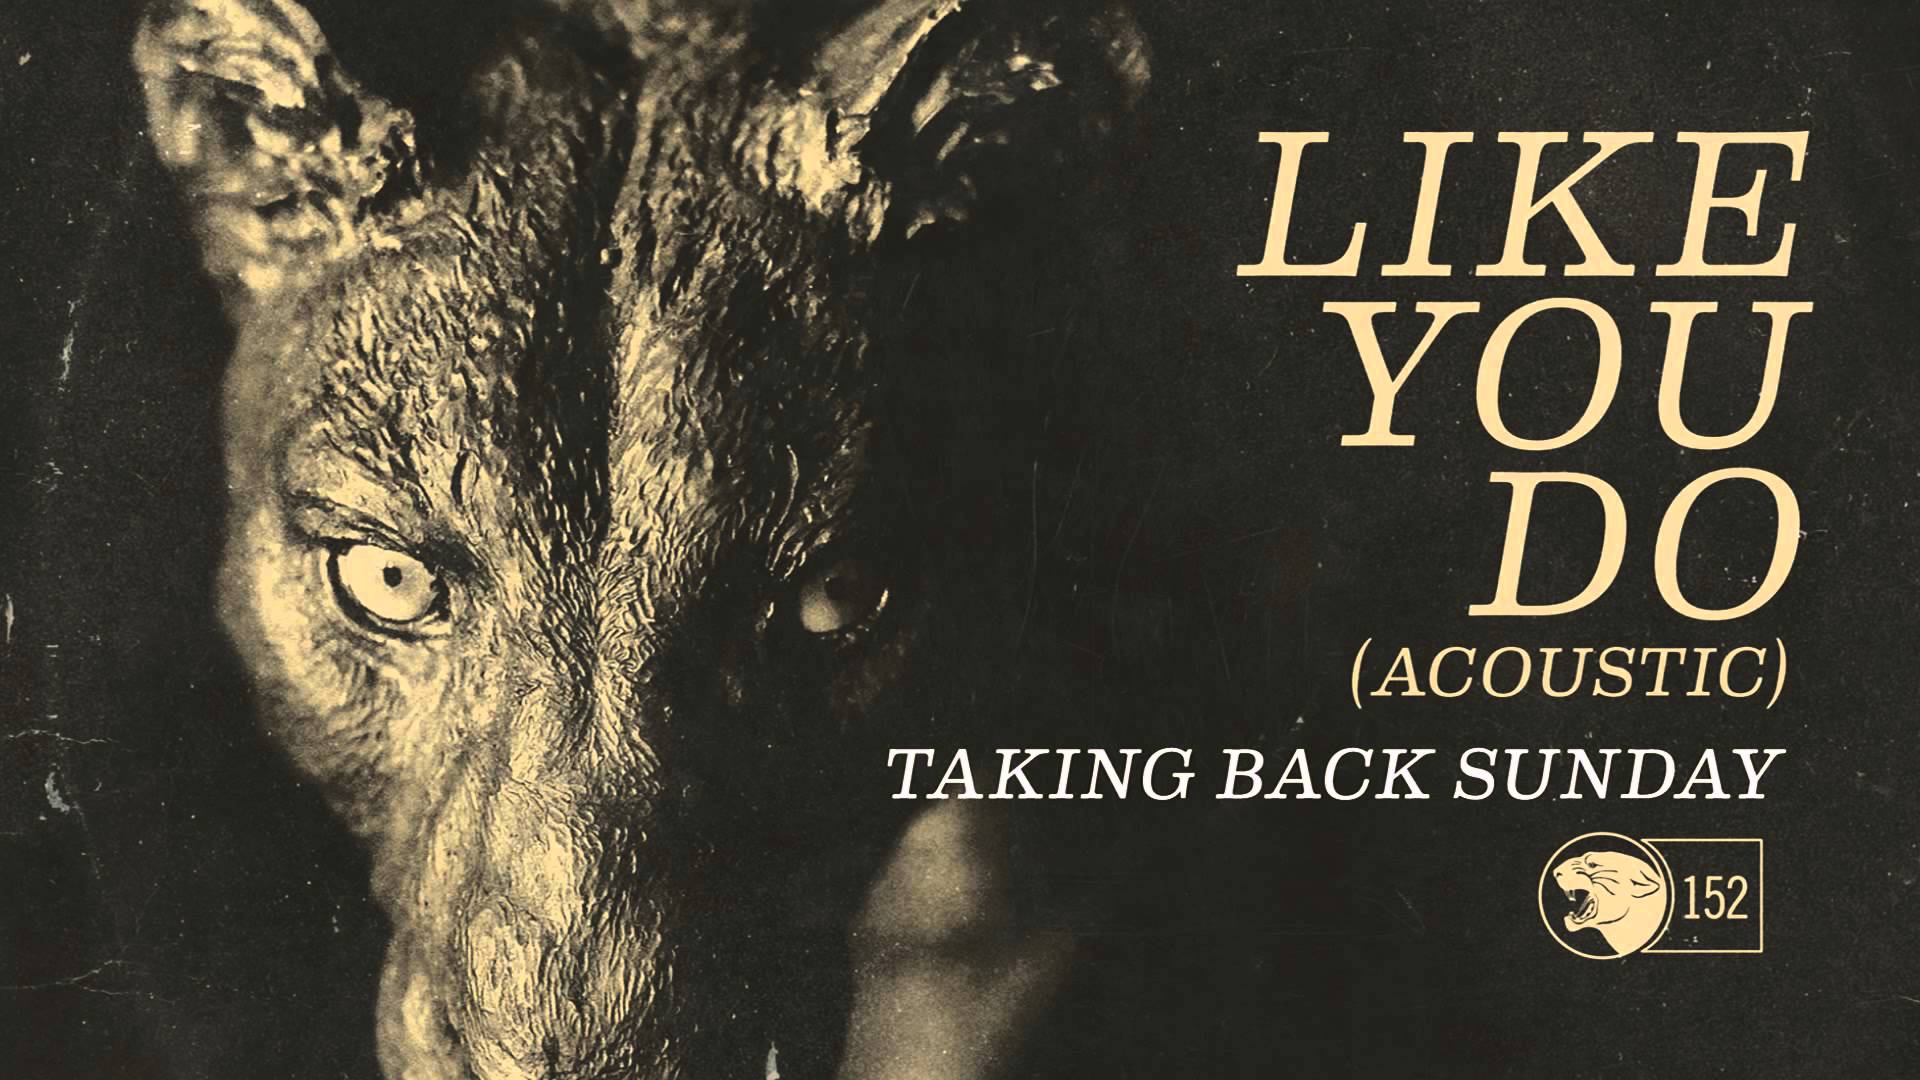 Taking Back Sunday - Like You Do (Acoustic) - YouTube